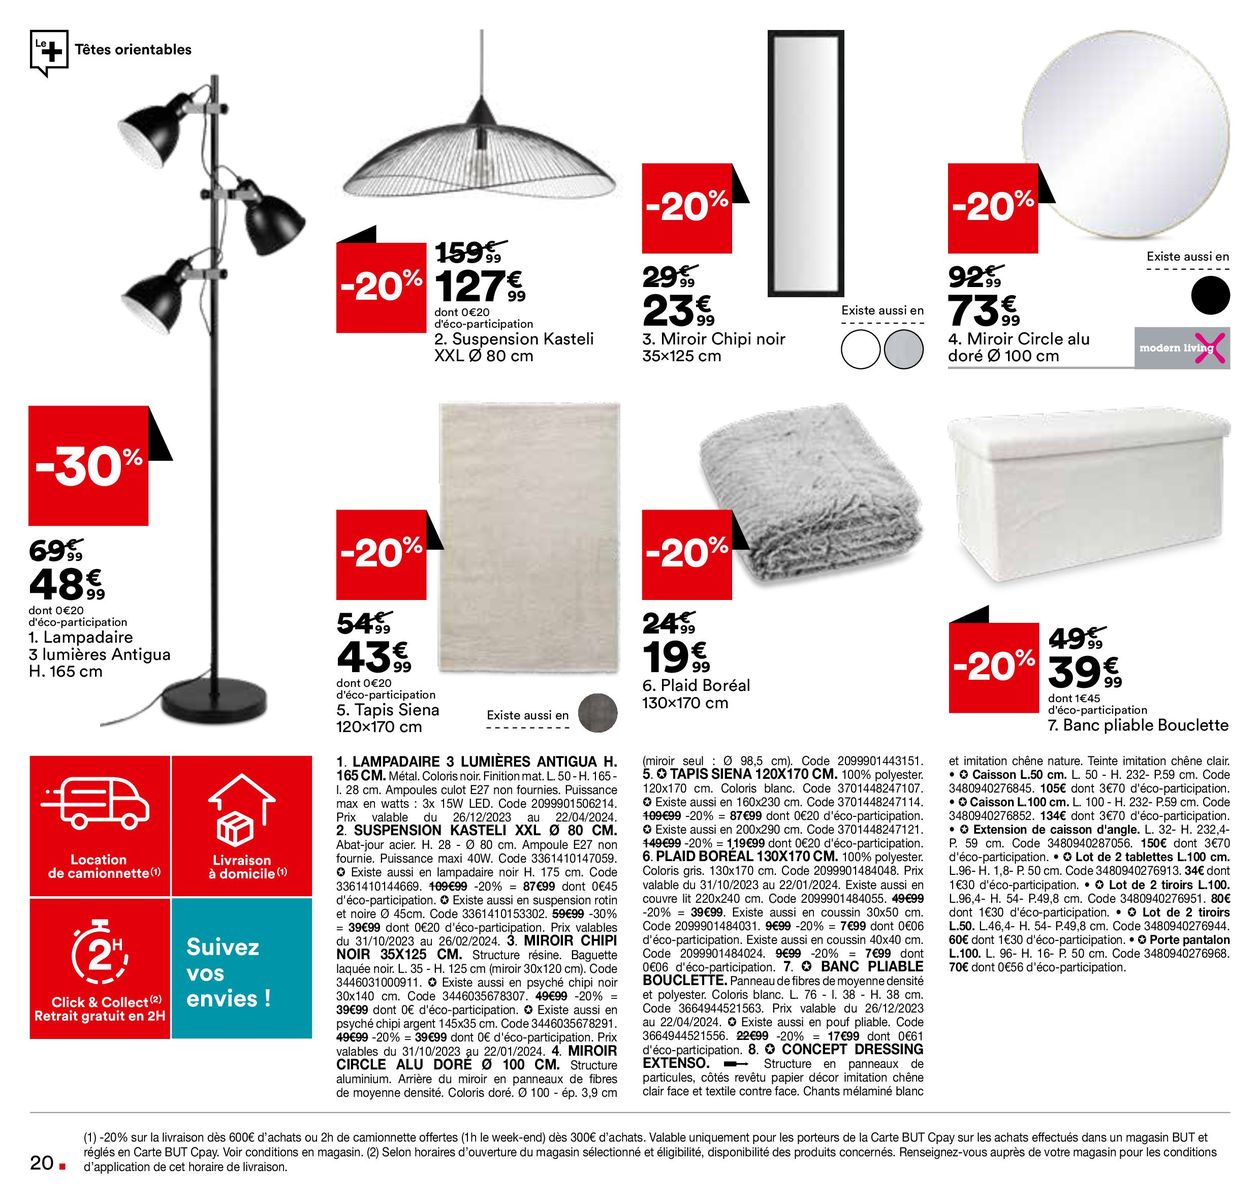 Catalogue Promos spéciales Blanc, page 00020